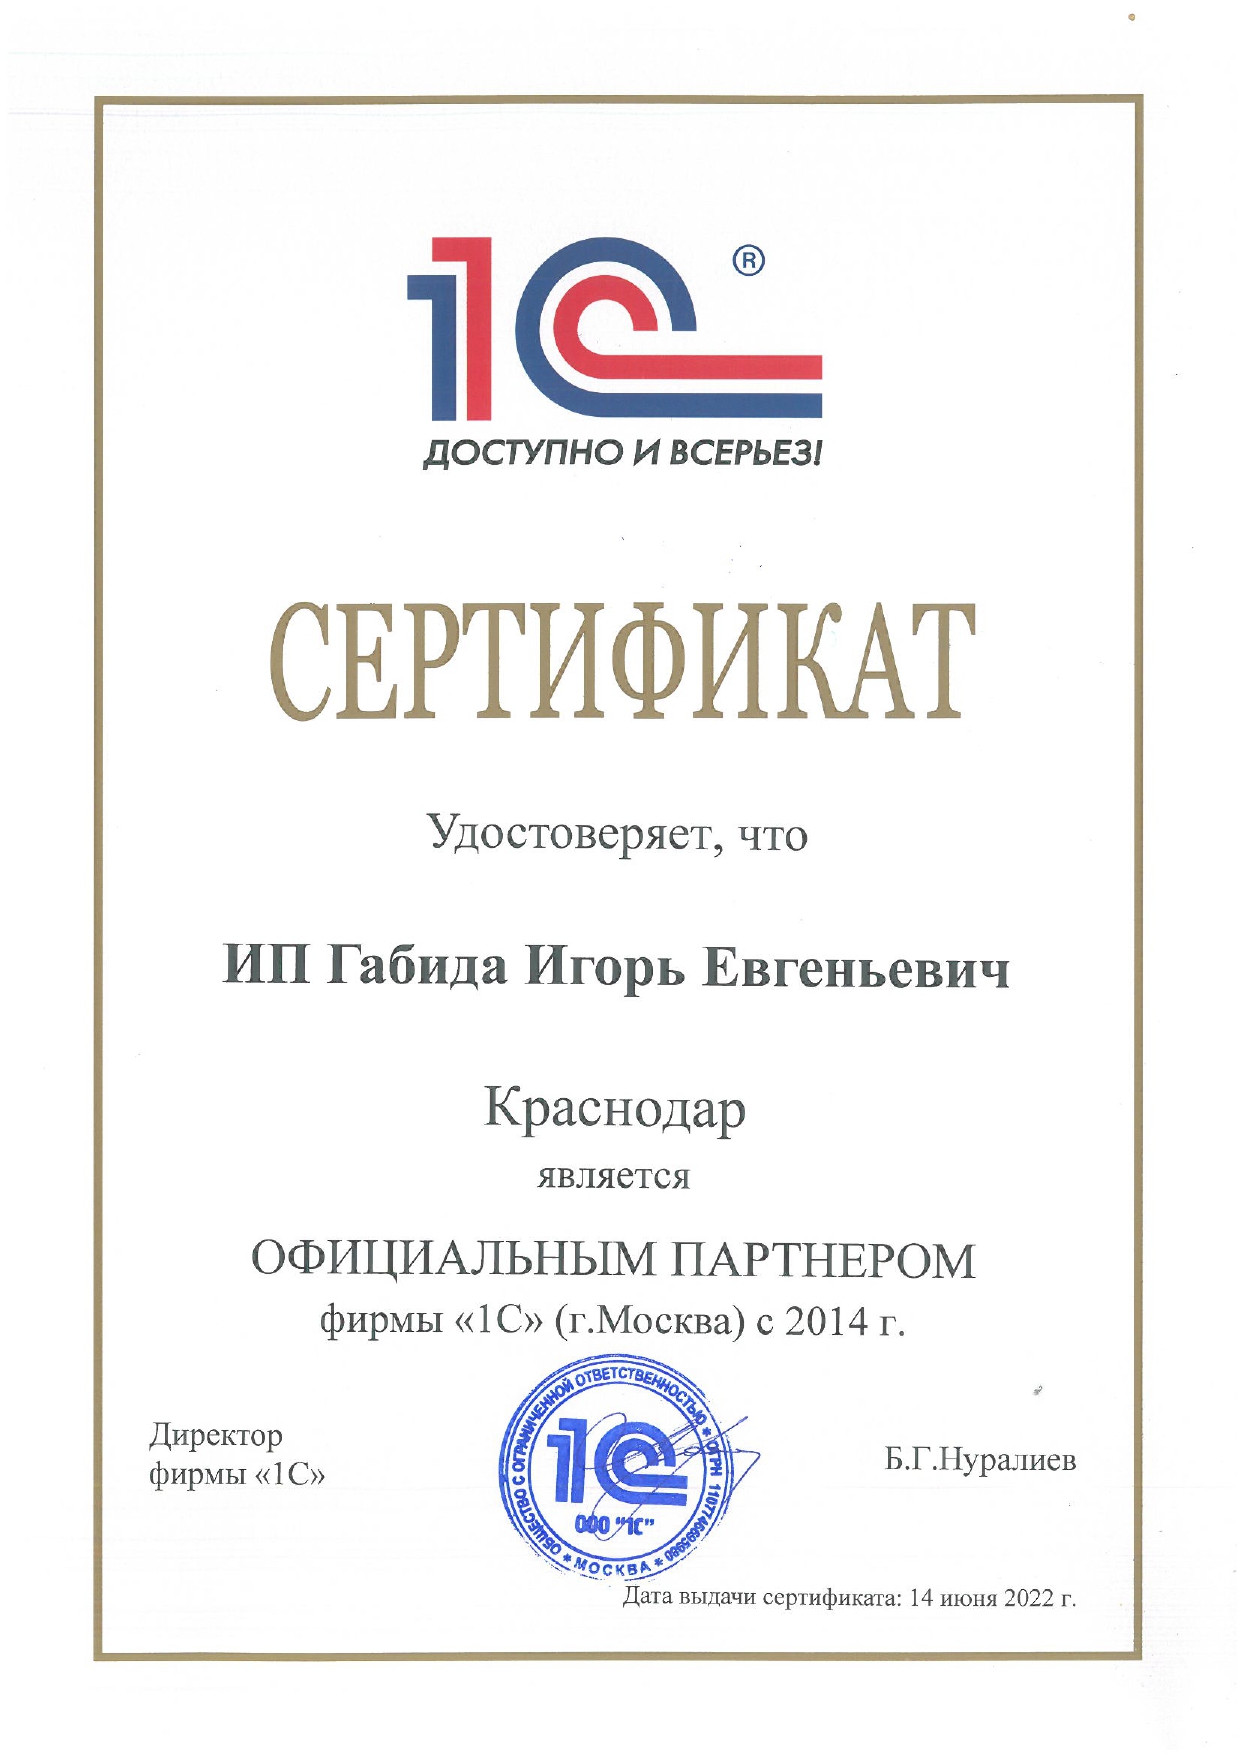 Сертификат официального партнера 1С